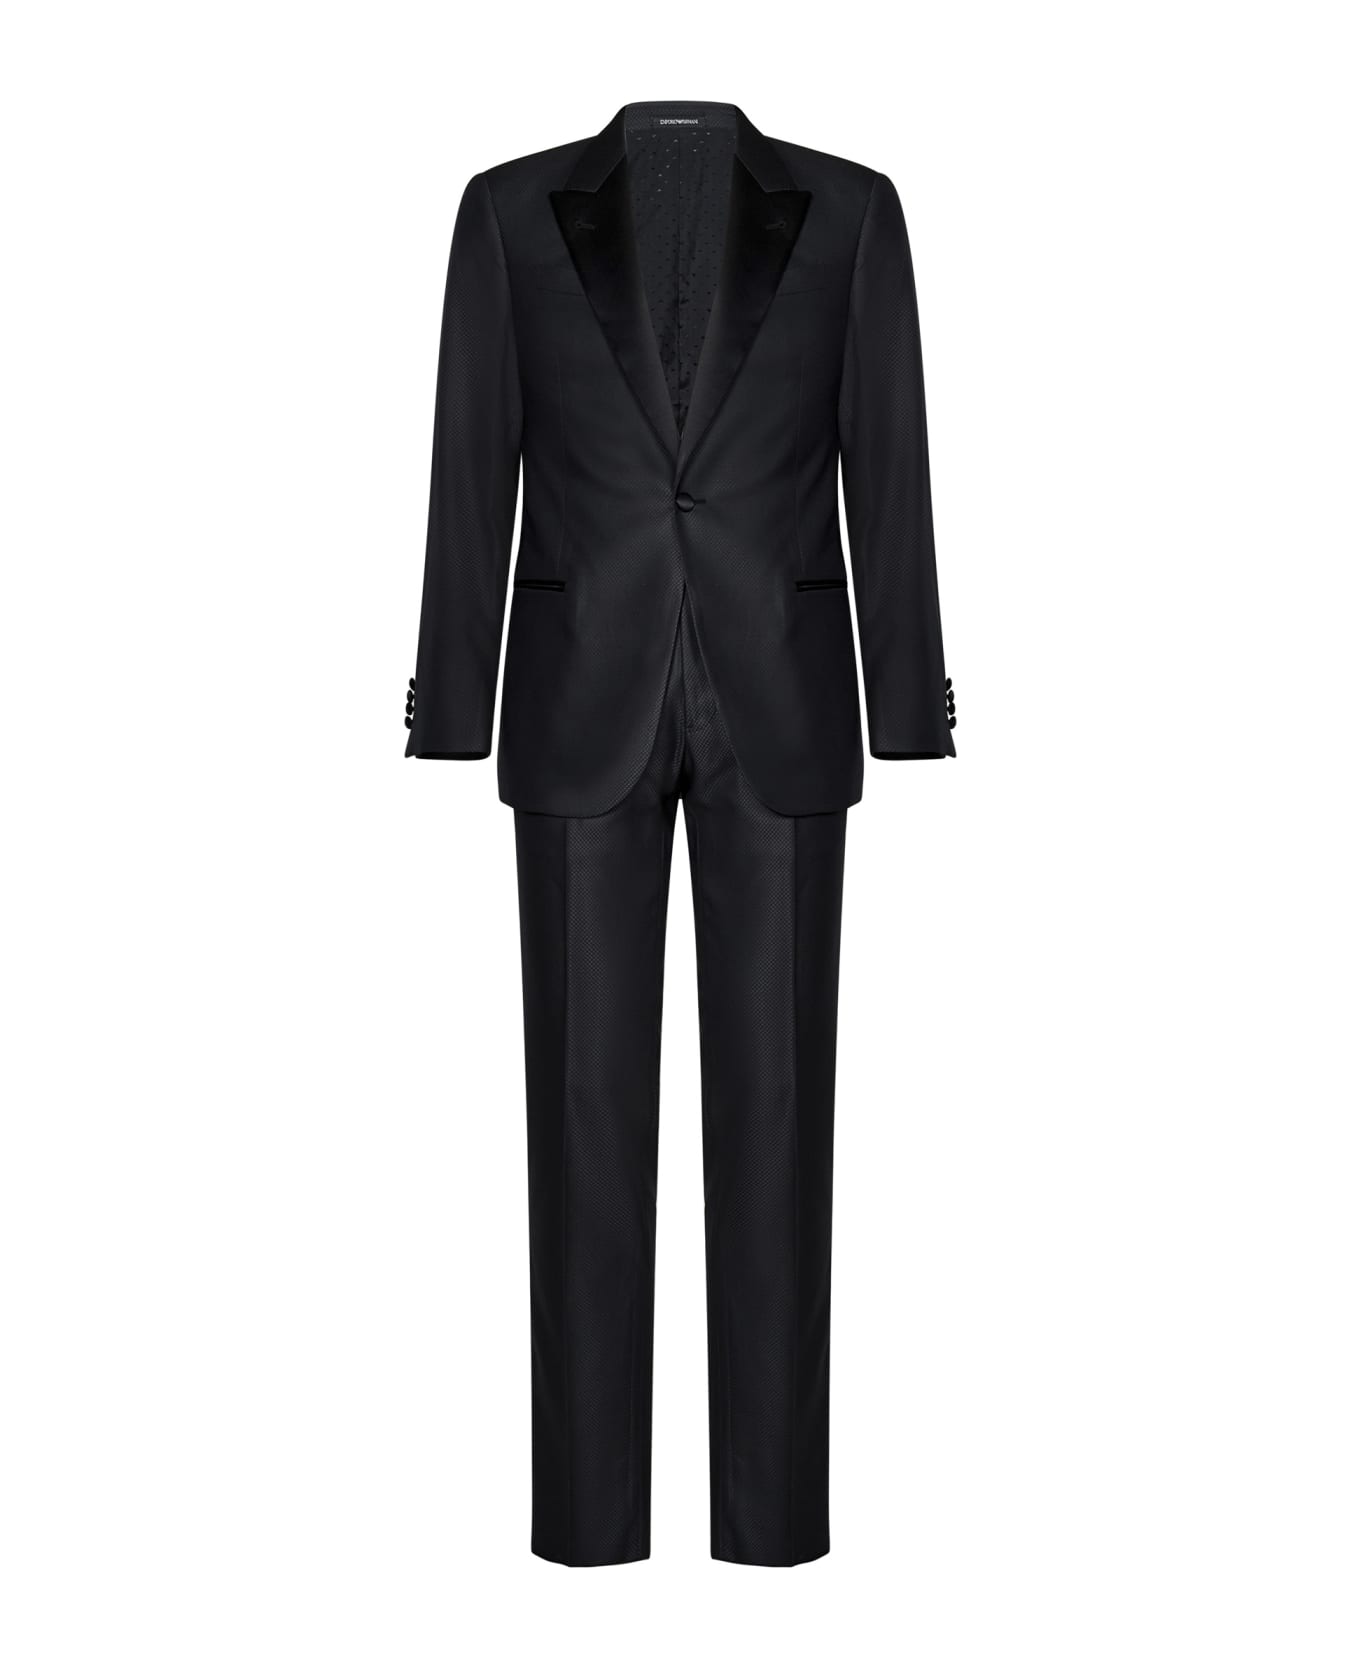 Emporio Armani Suit - Grey